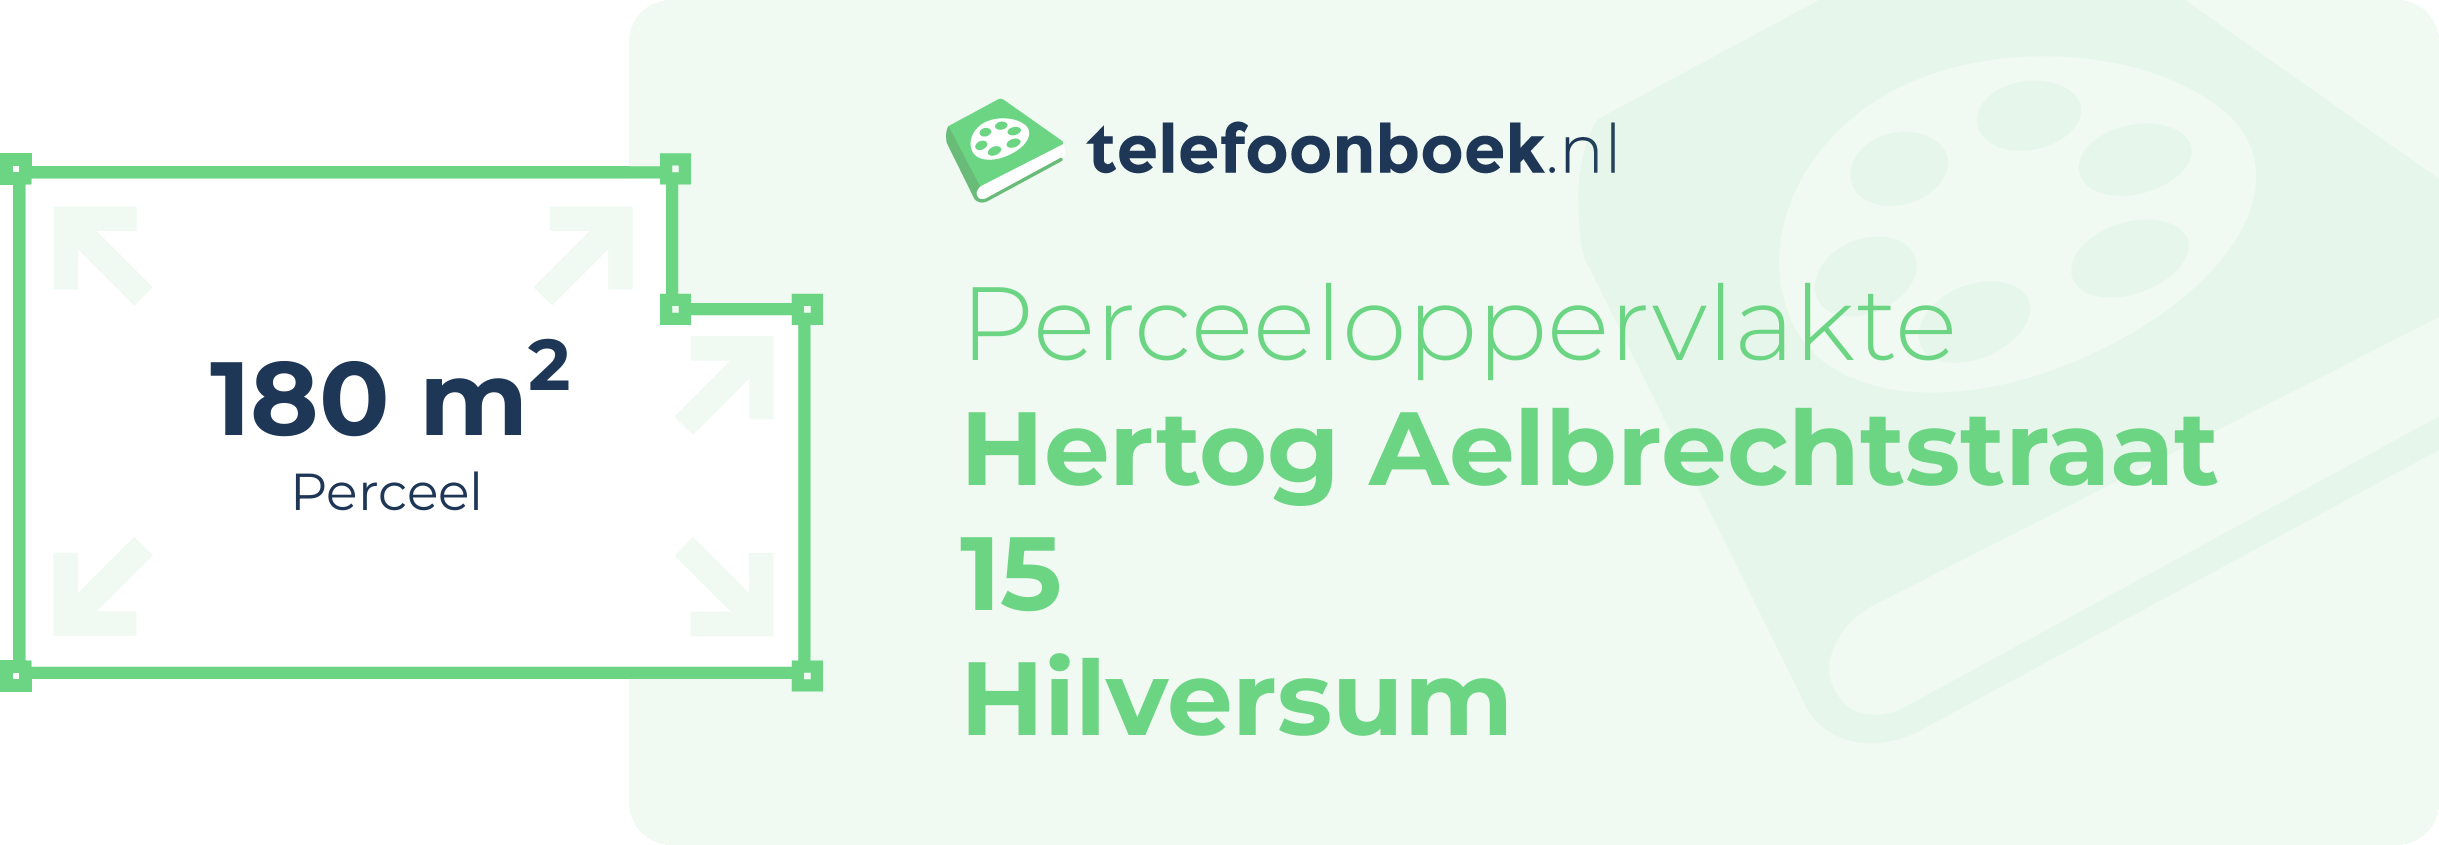 Perceeloppervlakte Hertog Aelbrechtstraat 15 Hilversum